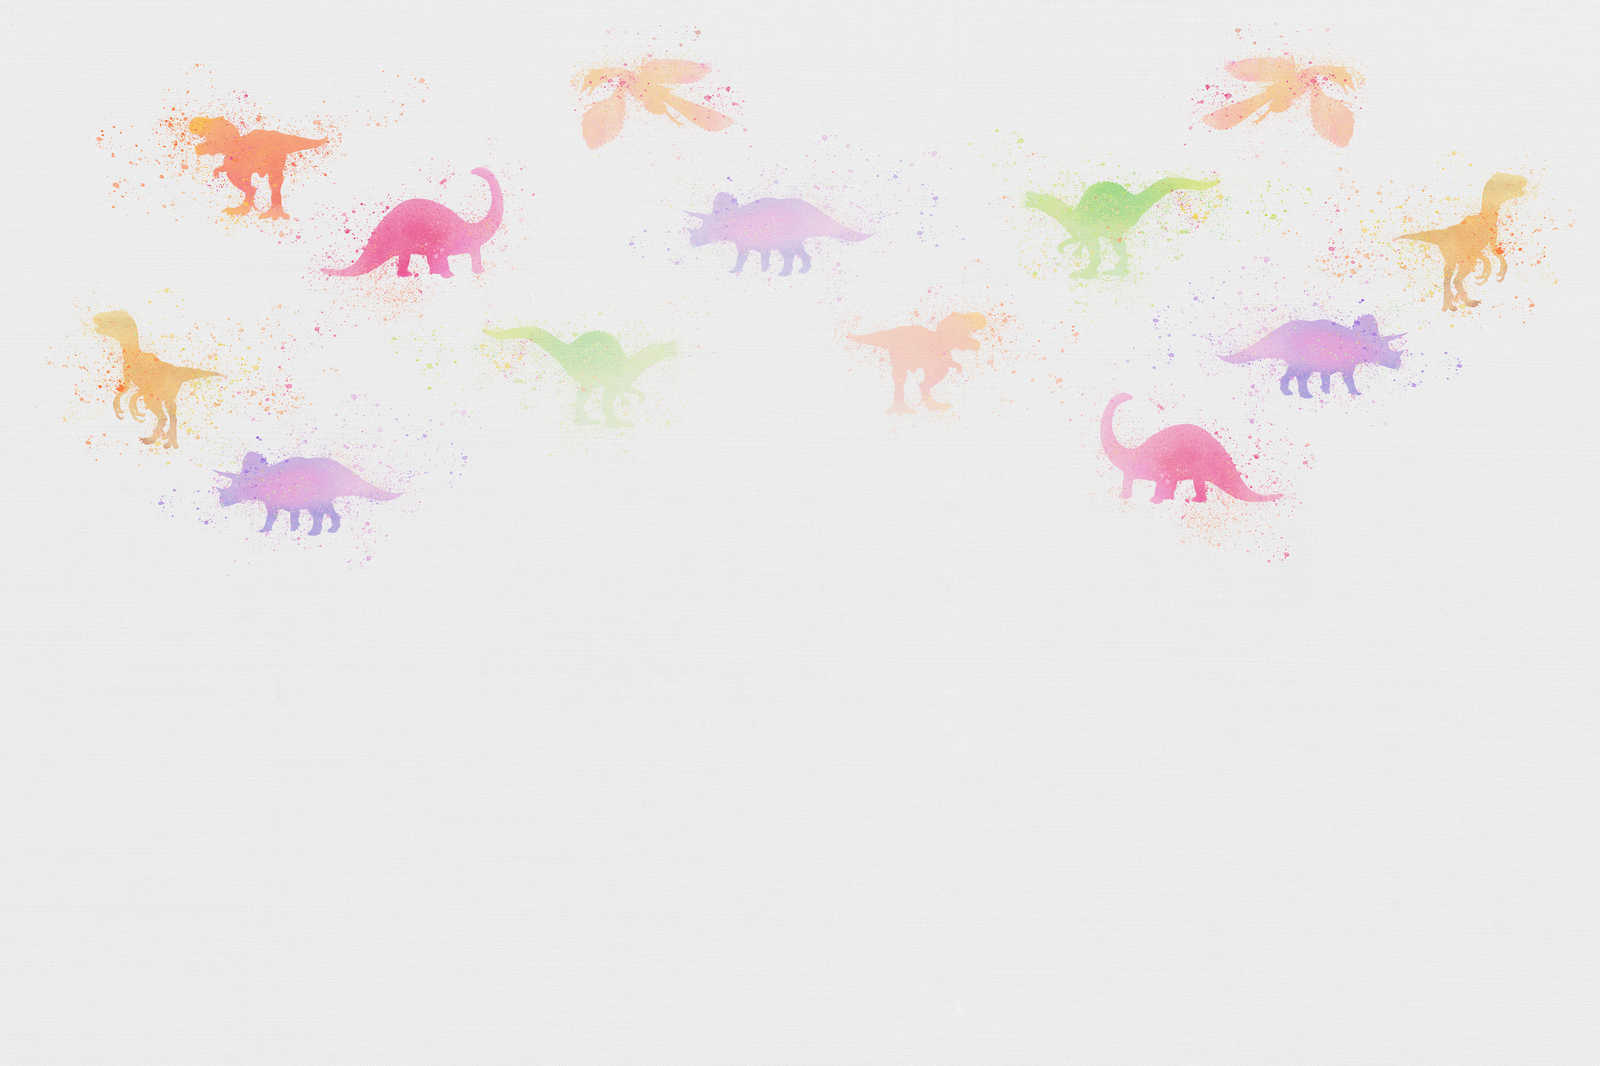             Leinwandbild Kinderzimmer mit kleinen Dinosauriern – 0,90 m x 0,60 m
        